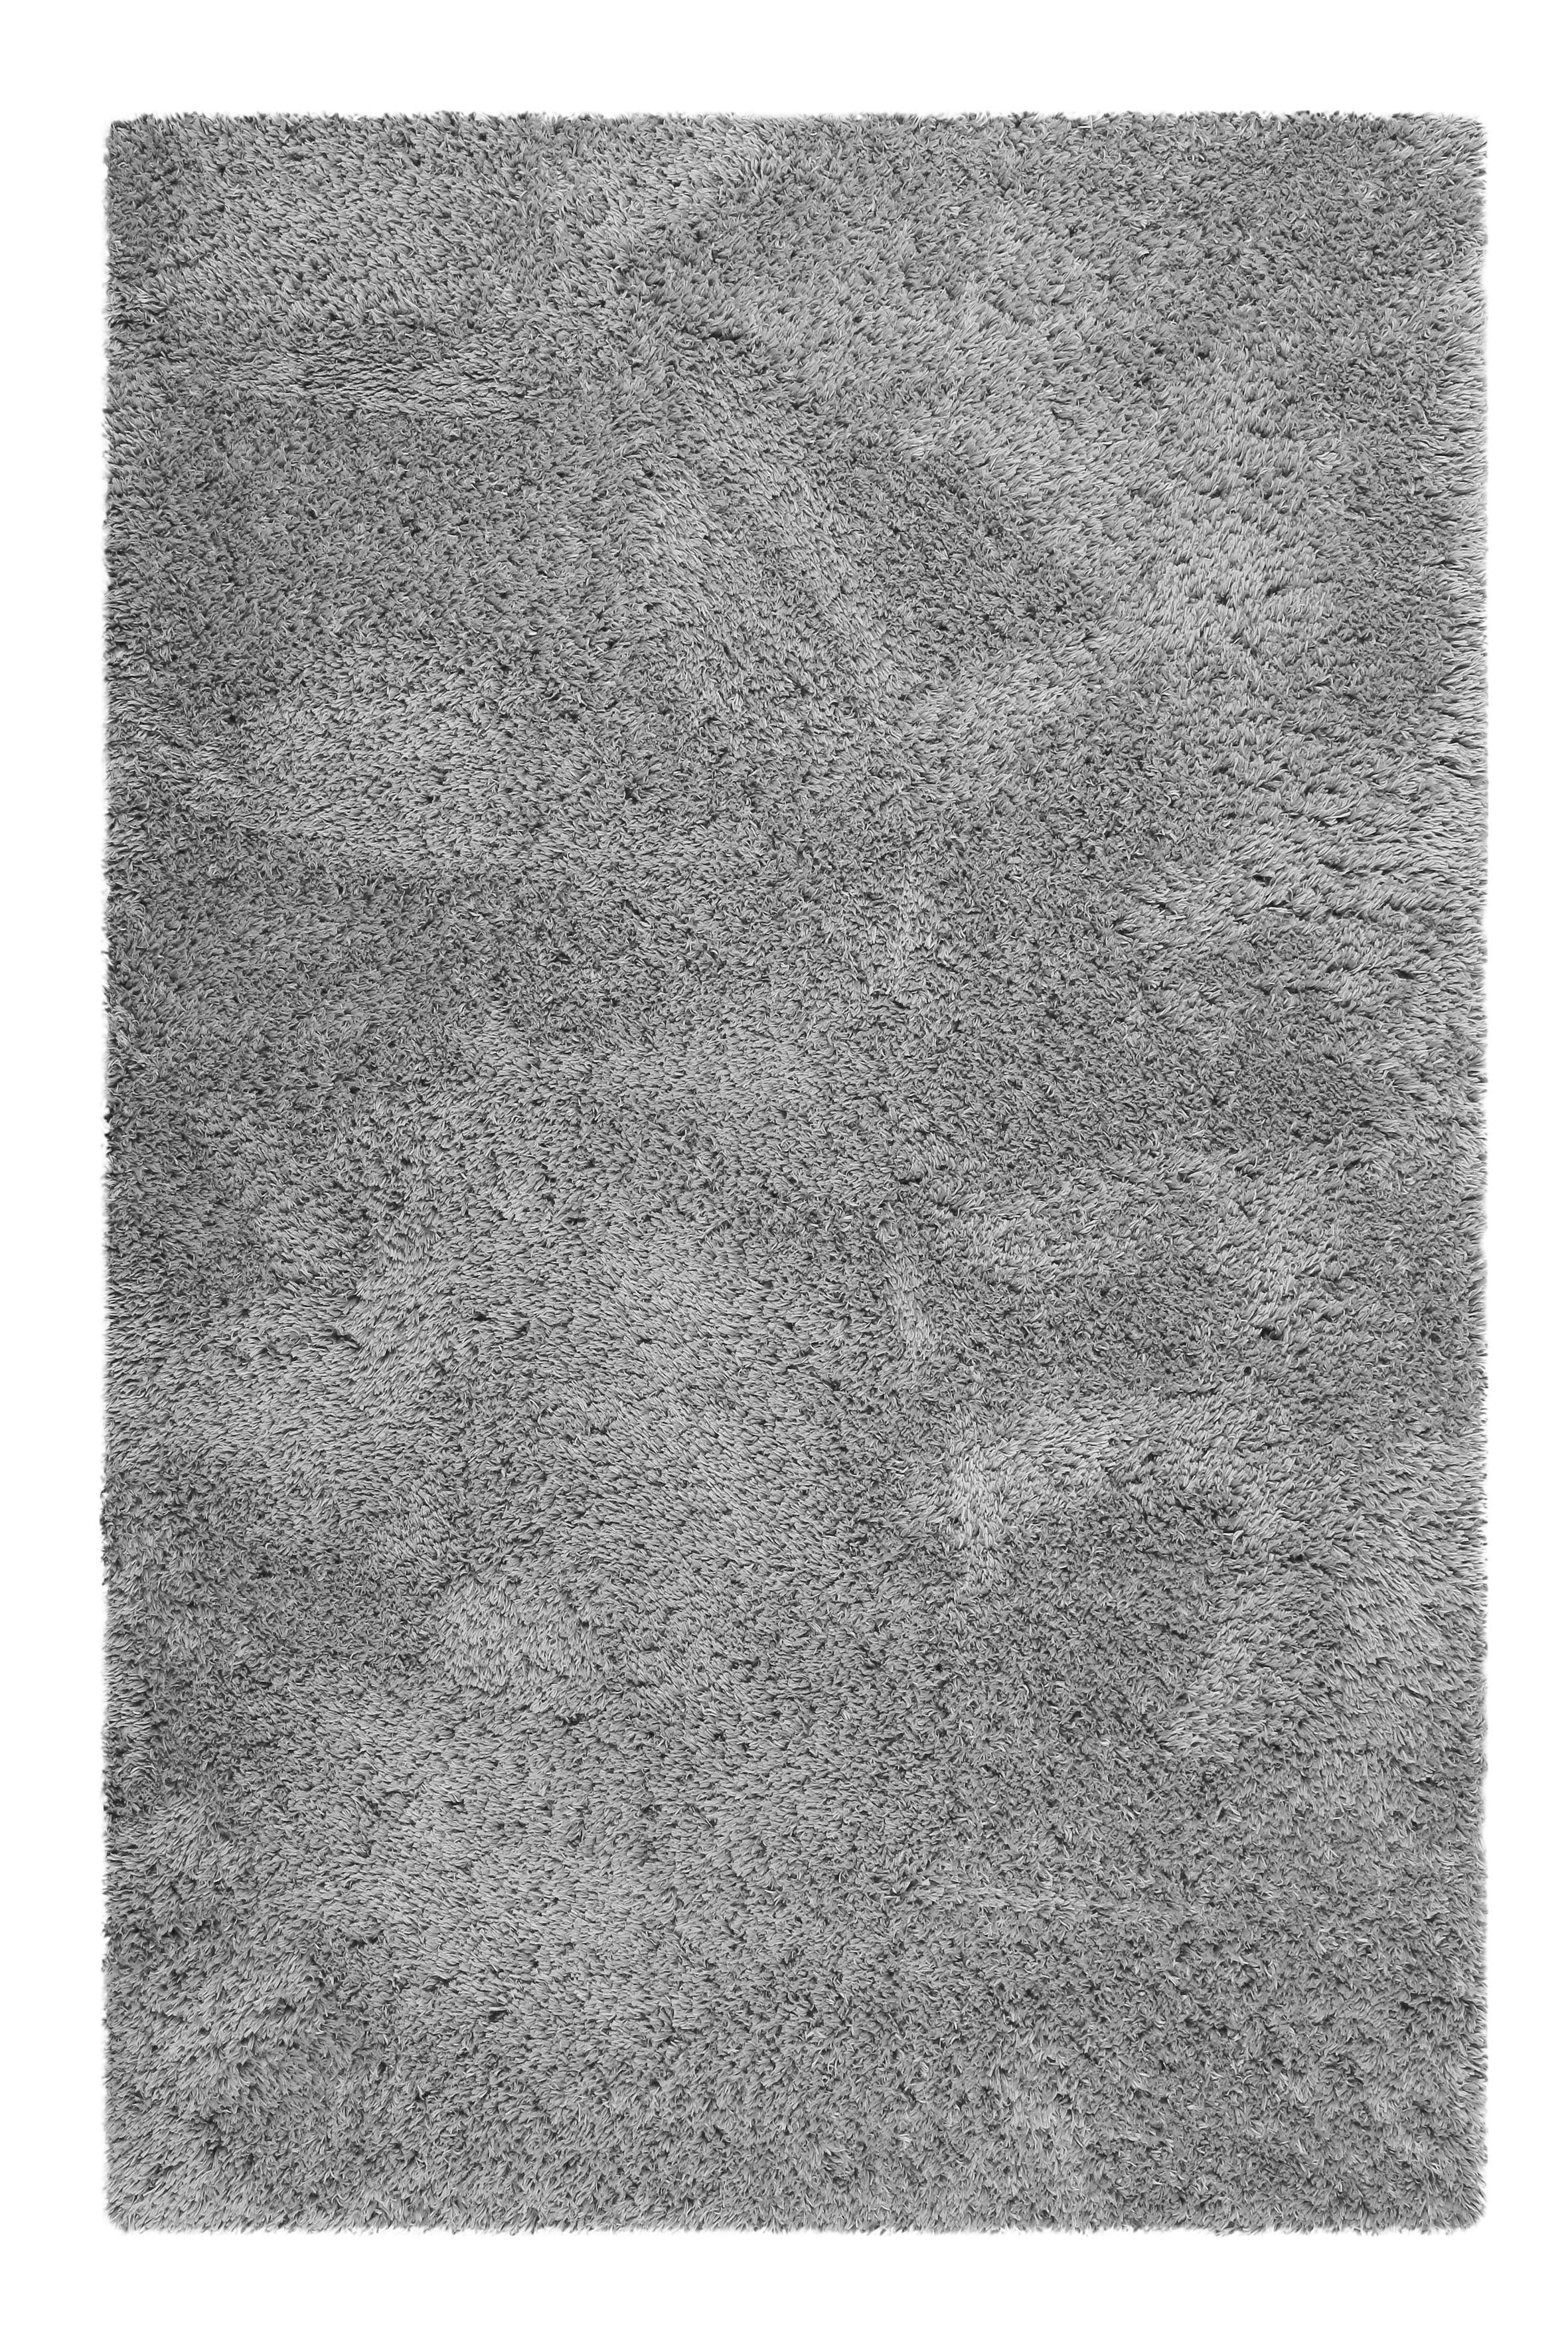 Esprit KOBEREC S VYSOKÝM VLASEM, 160/225 cm, barvy stříbra - barvy stříbra - textil